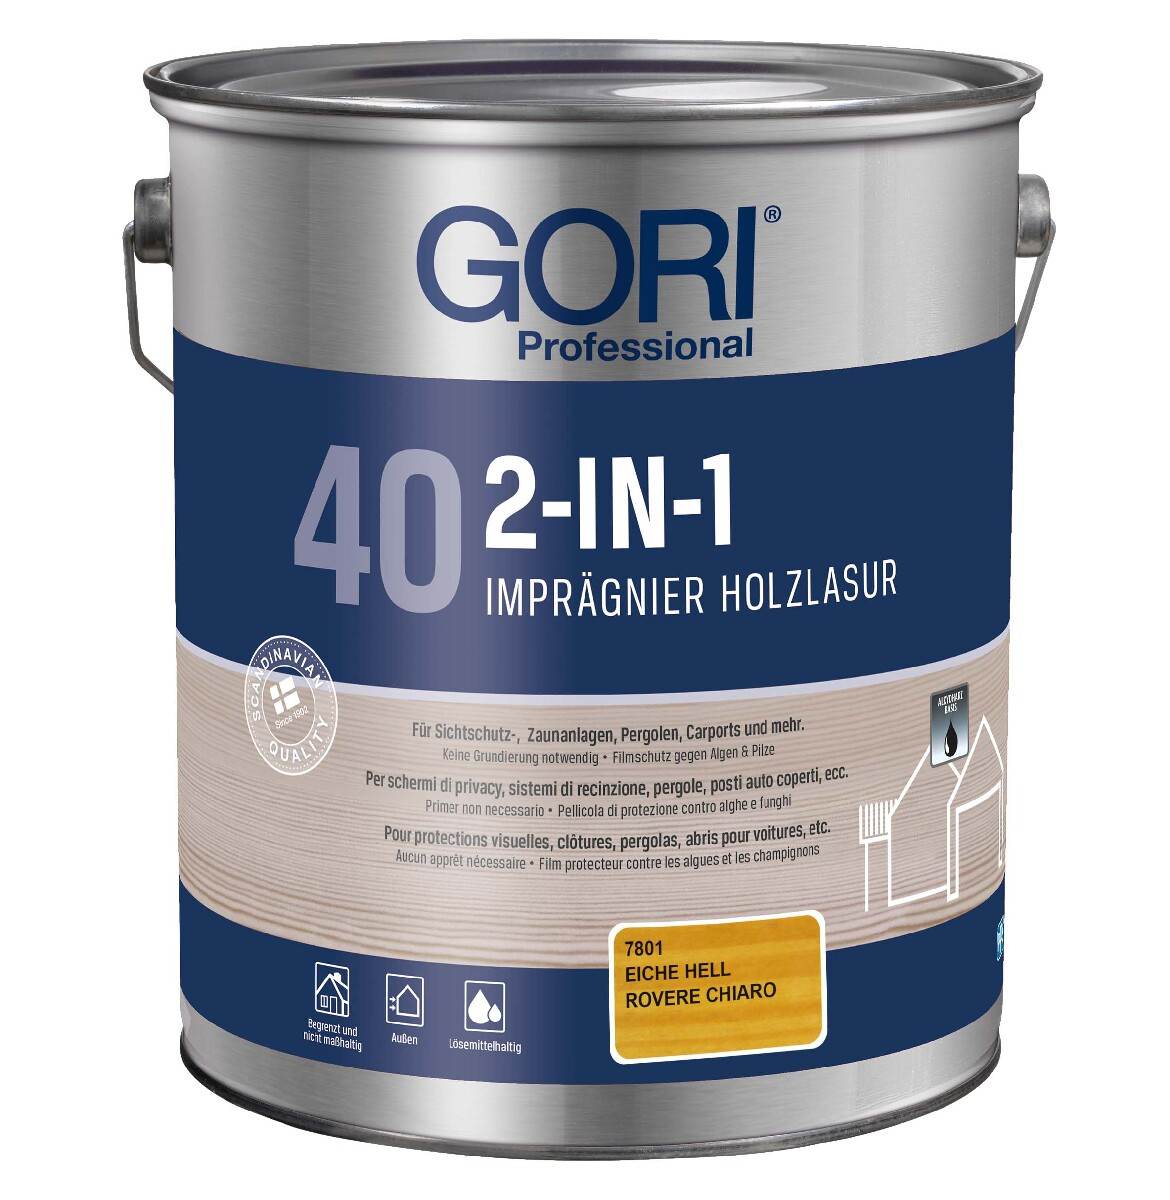 GORI 40 2-IN-1 Holzlasur 5 L in Eiche Hell für Außen, UV- und Wetterschutz, Filmschutz gegen Algen & Pilze